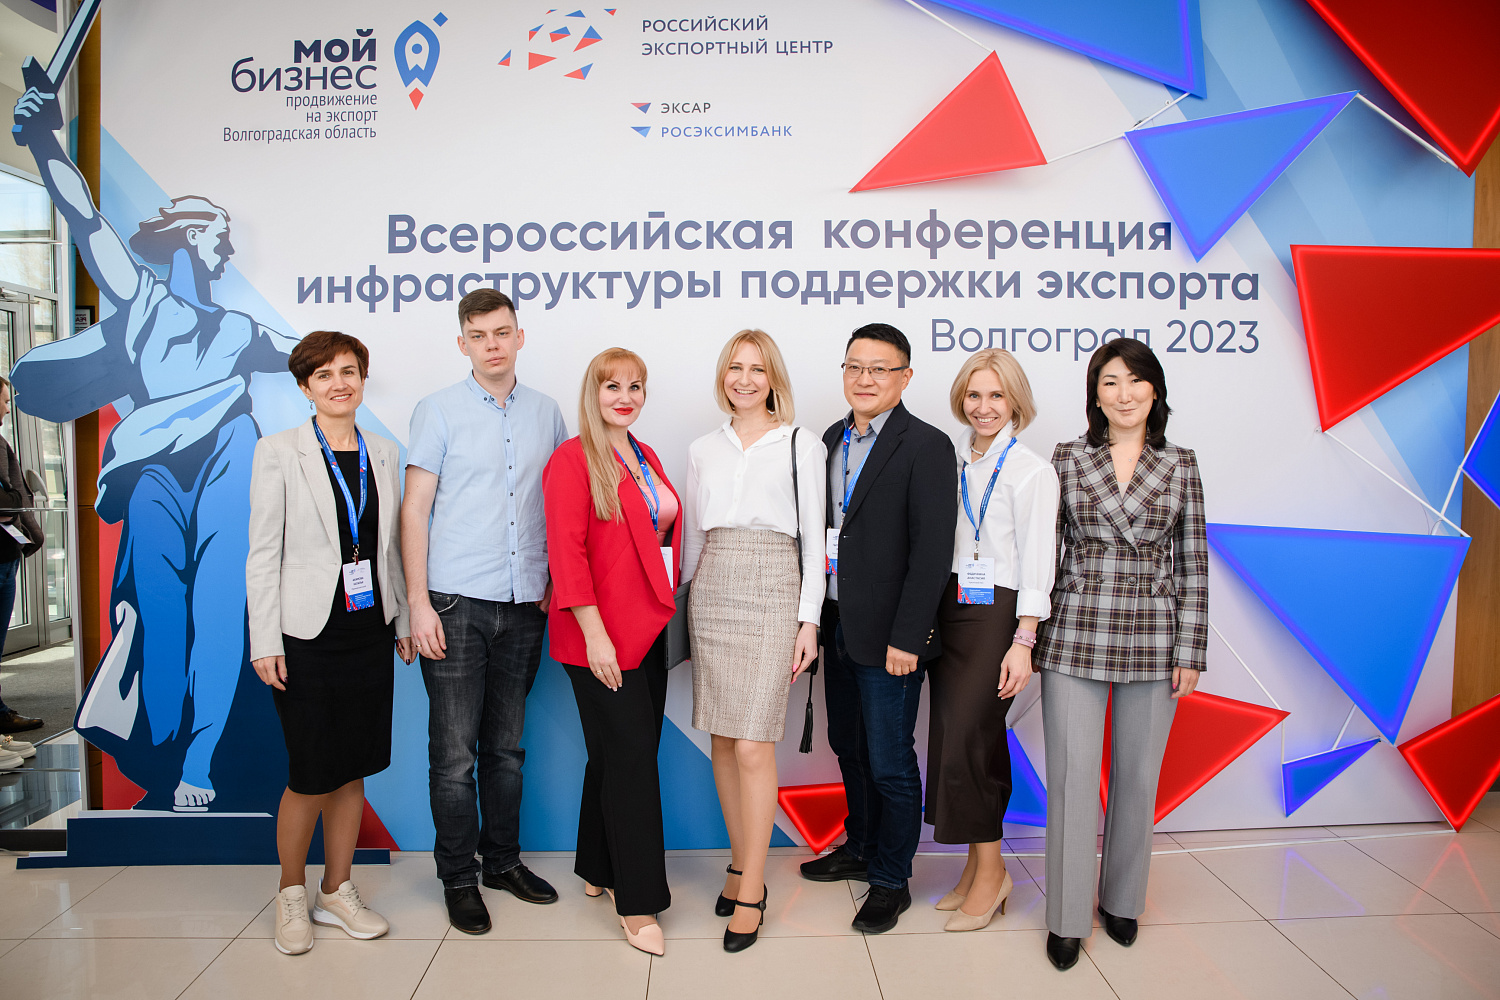 Всероссийская конференция инфраструктуры поддержки экспорта в Волгограде